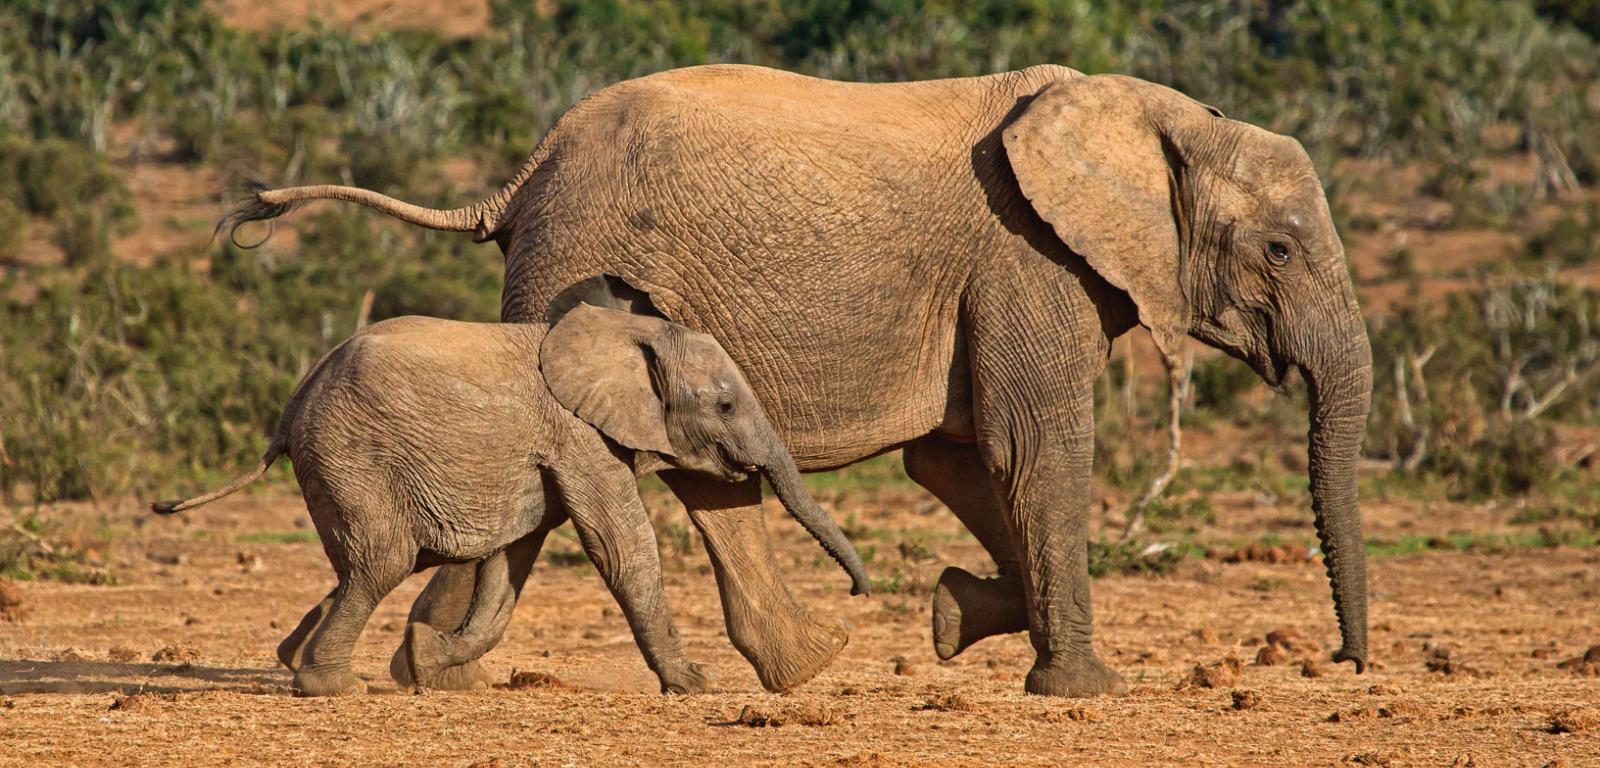 Samica słonia afrykańskiego w towarzystwie dziecka w Parku Narodowym Addo Elephant w RPA.